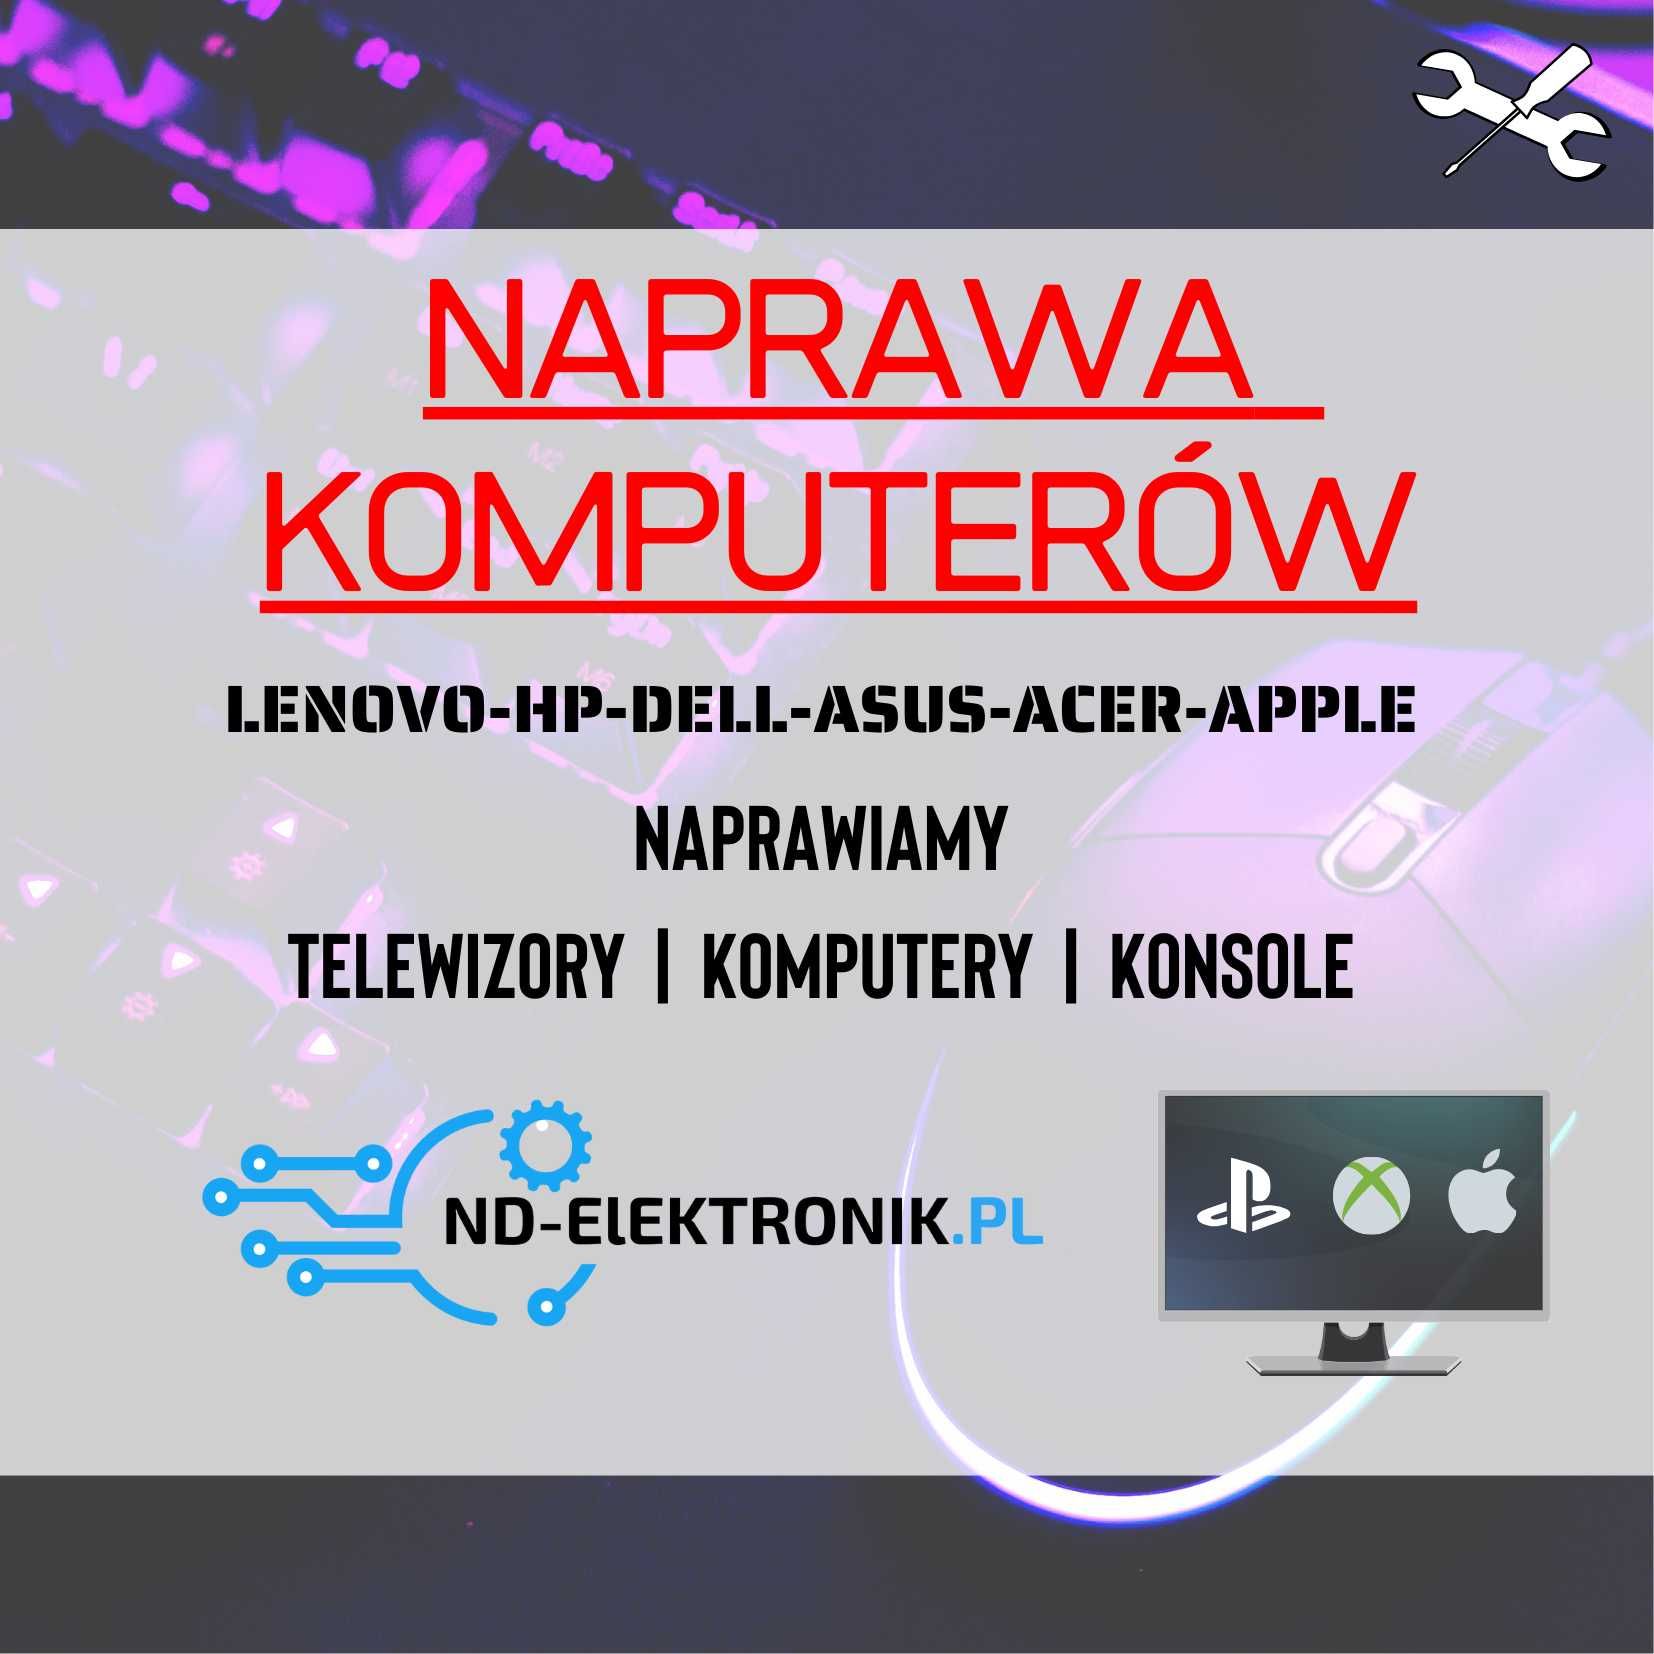 Naprawa - Komputerów / Laptopów - Sosnowiec - Jaworzno -Katowice